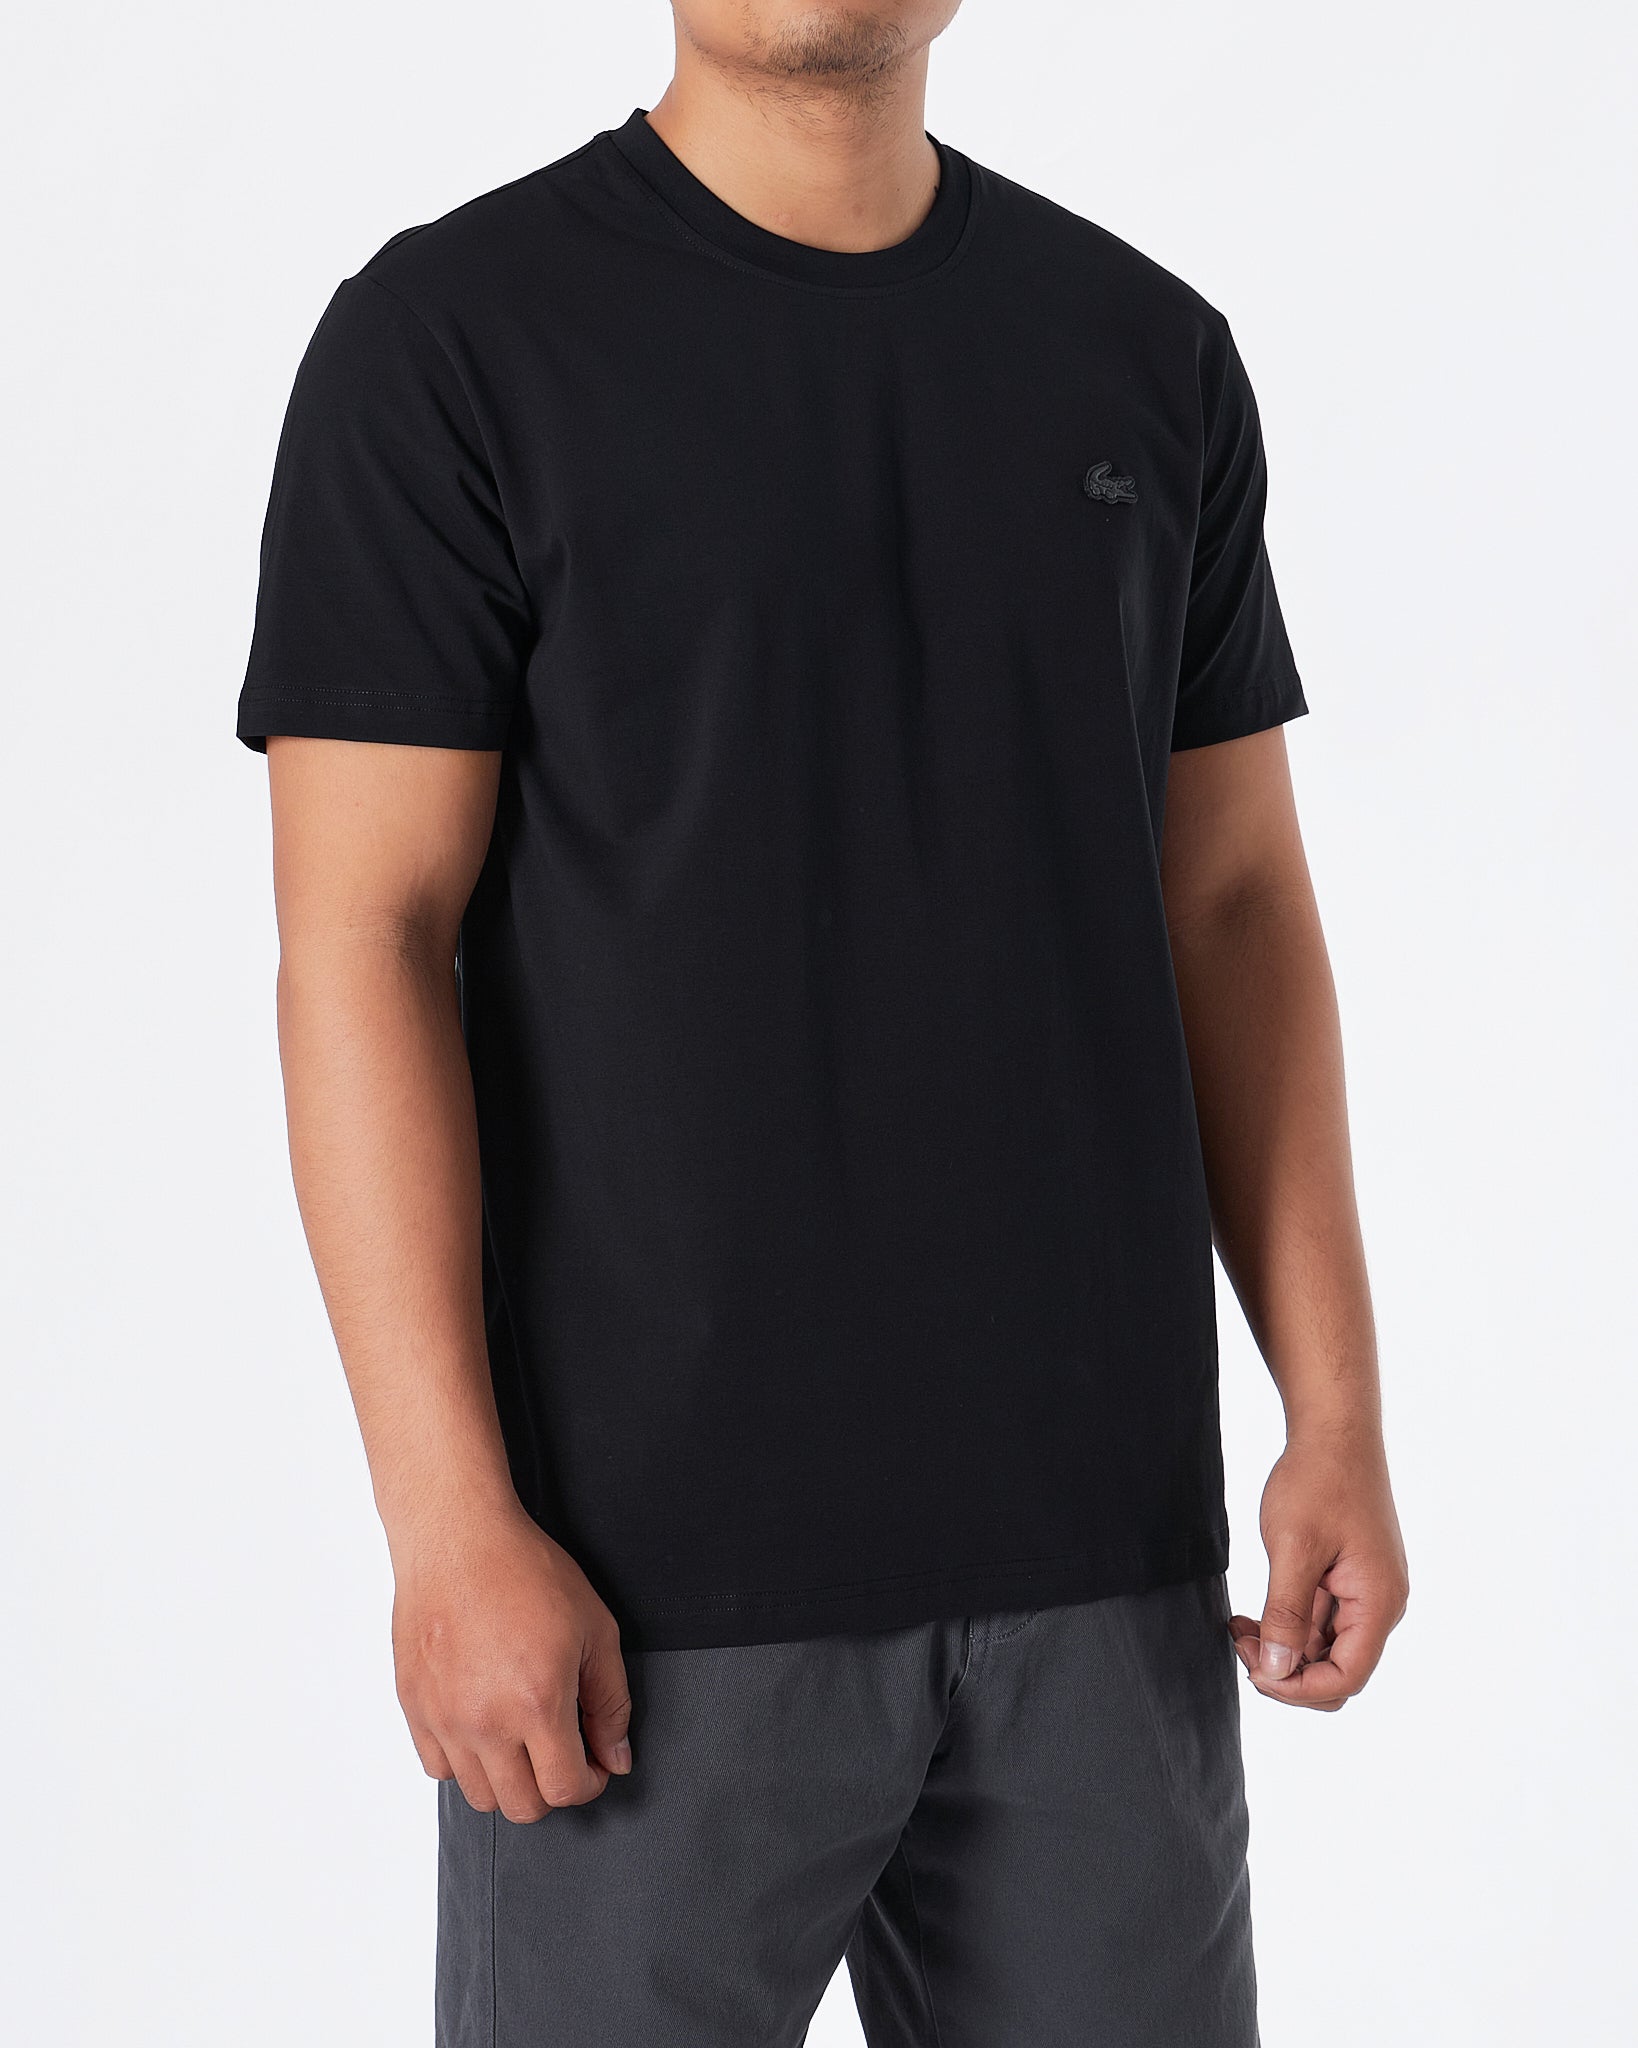 MOI OUTFIT-LAC Plain Men Black T-Shirt 15.90